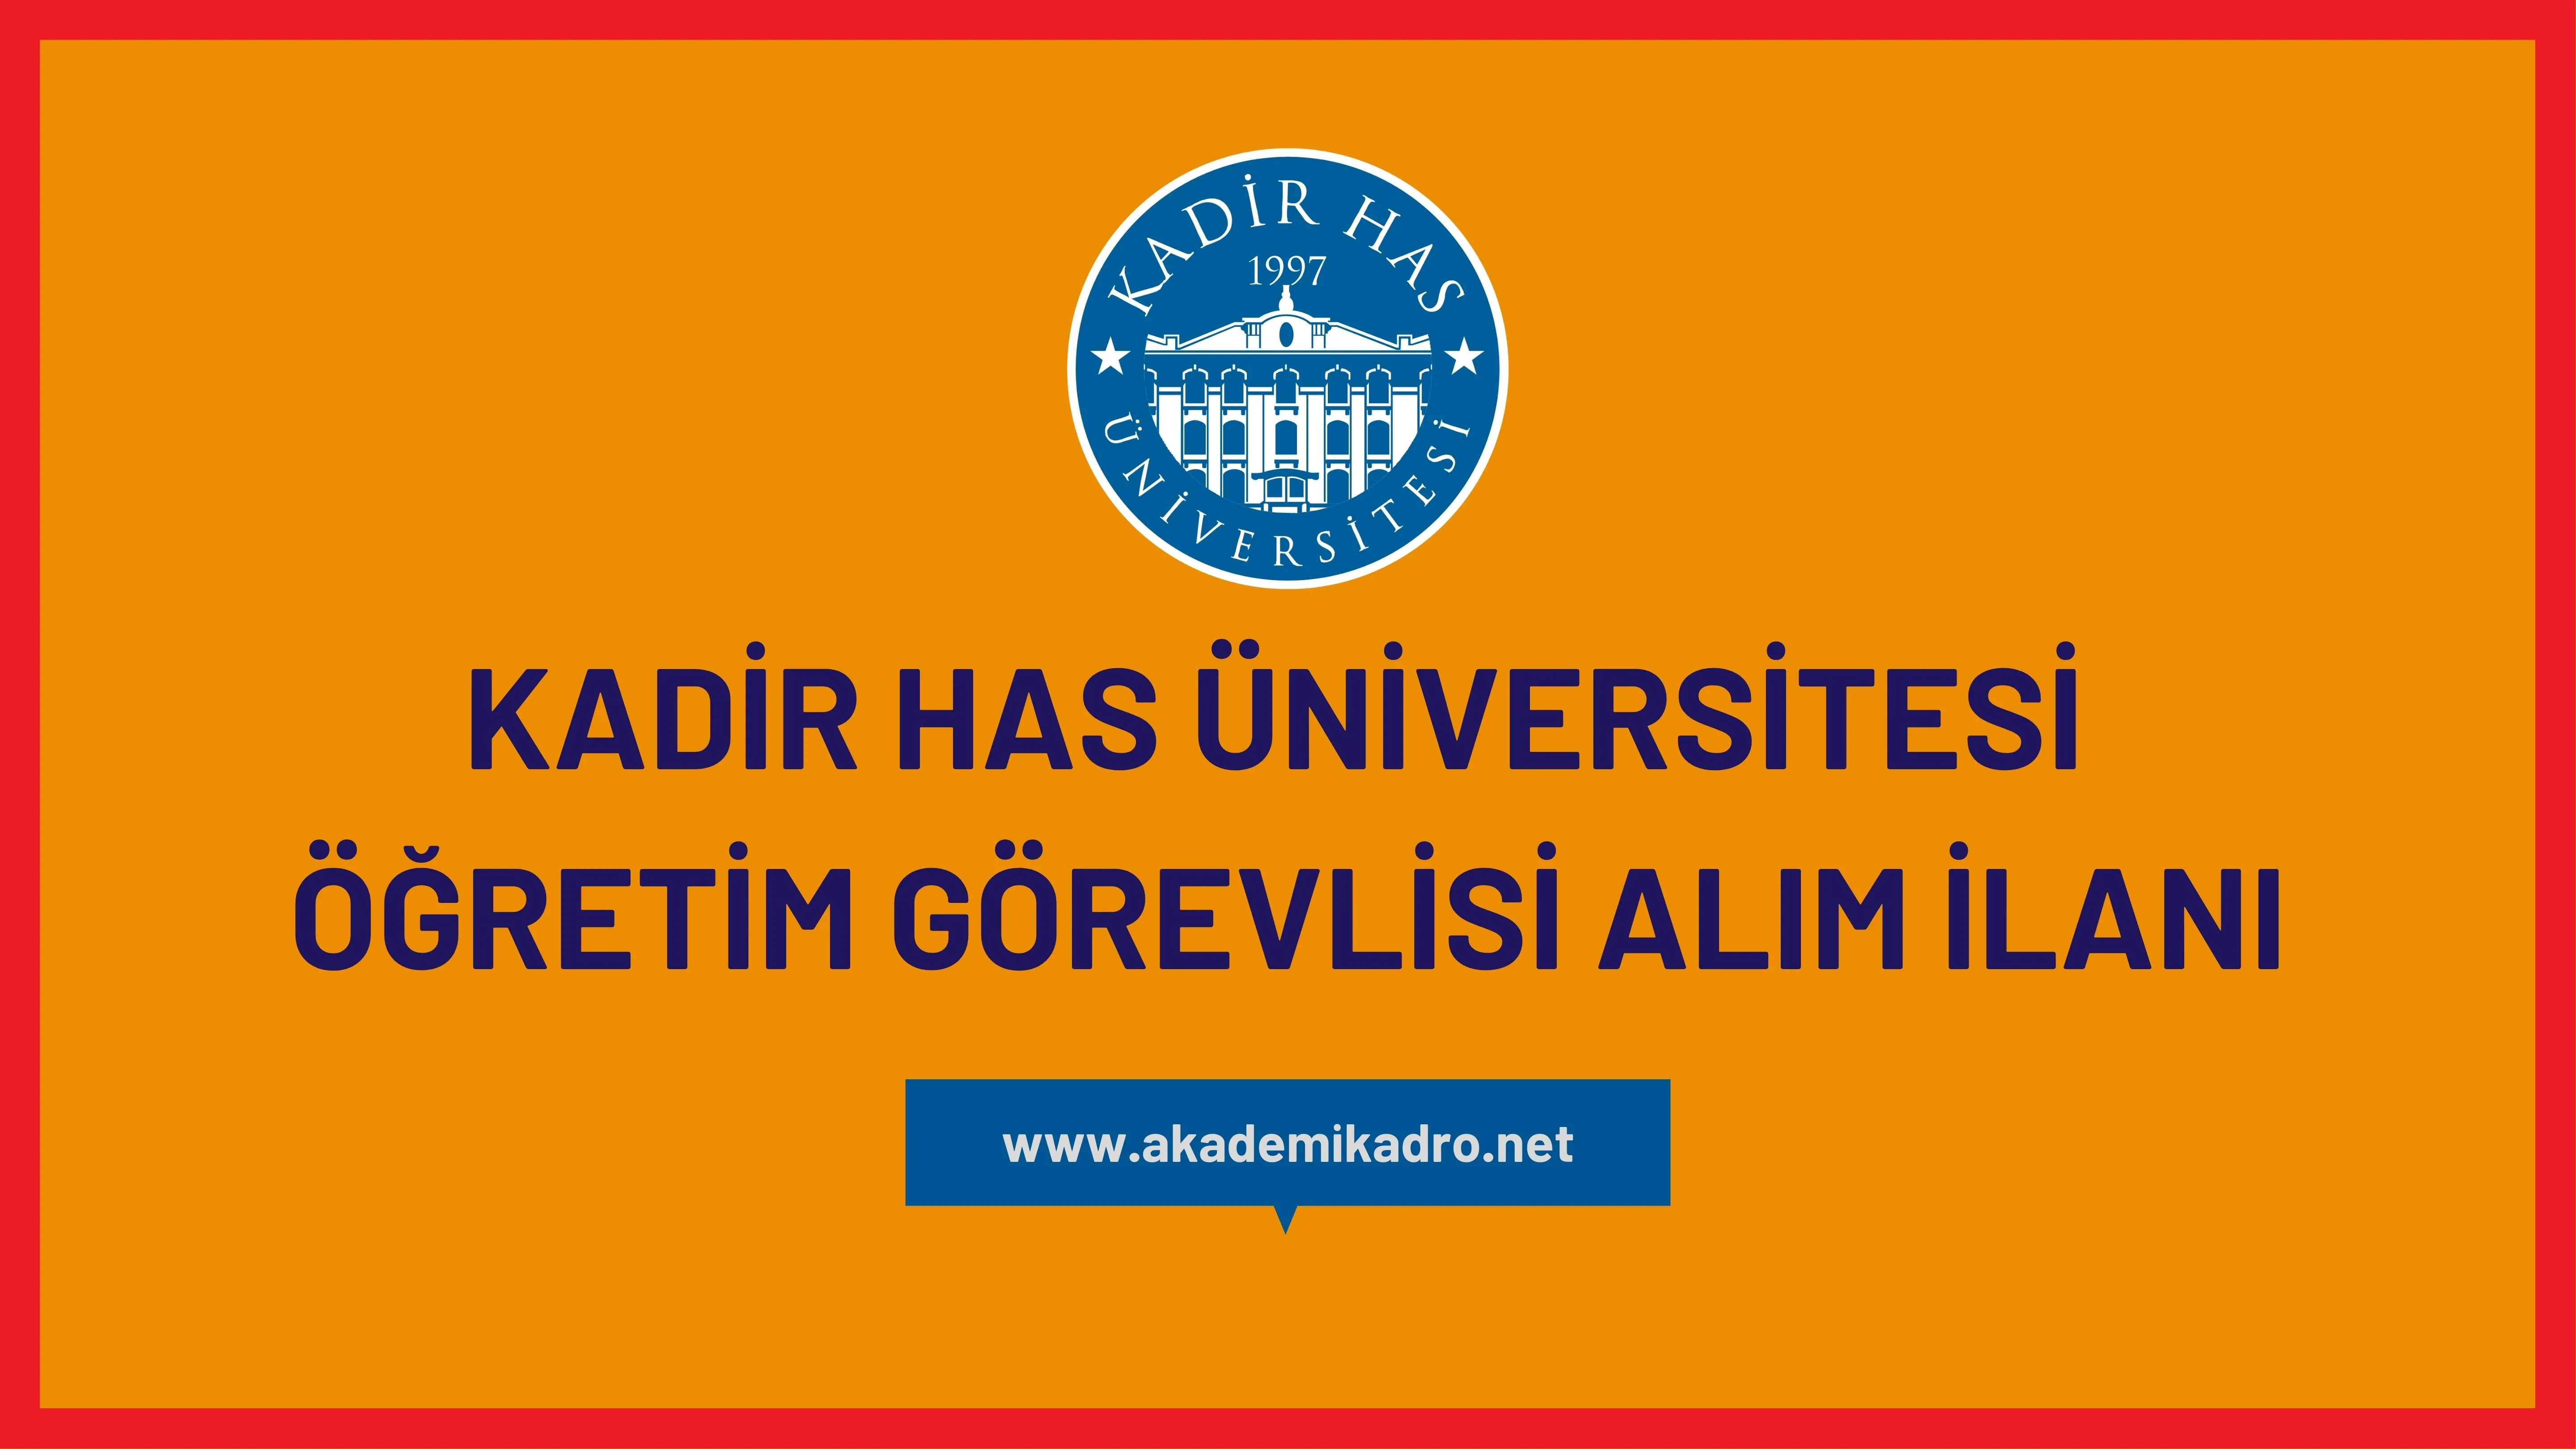 Kadir Has Üniversitesi 14 öğretim görevlisi alacak. Son başvuru tarihi 05 Haziran 2023.